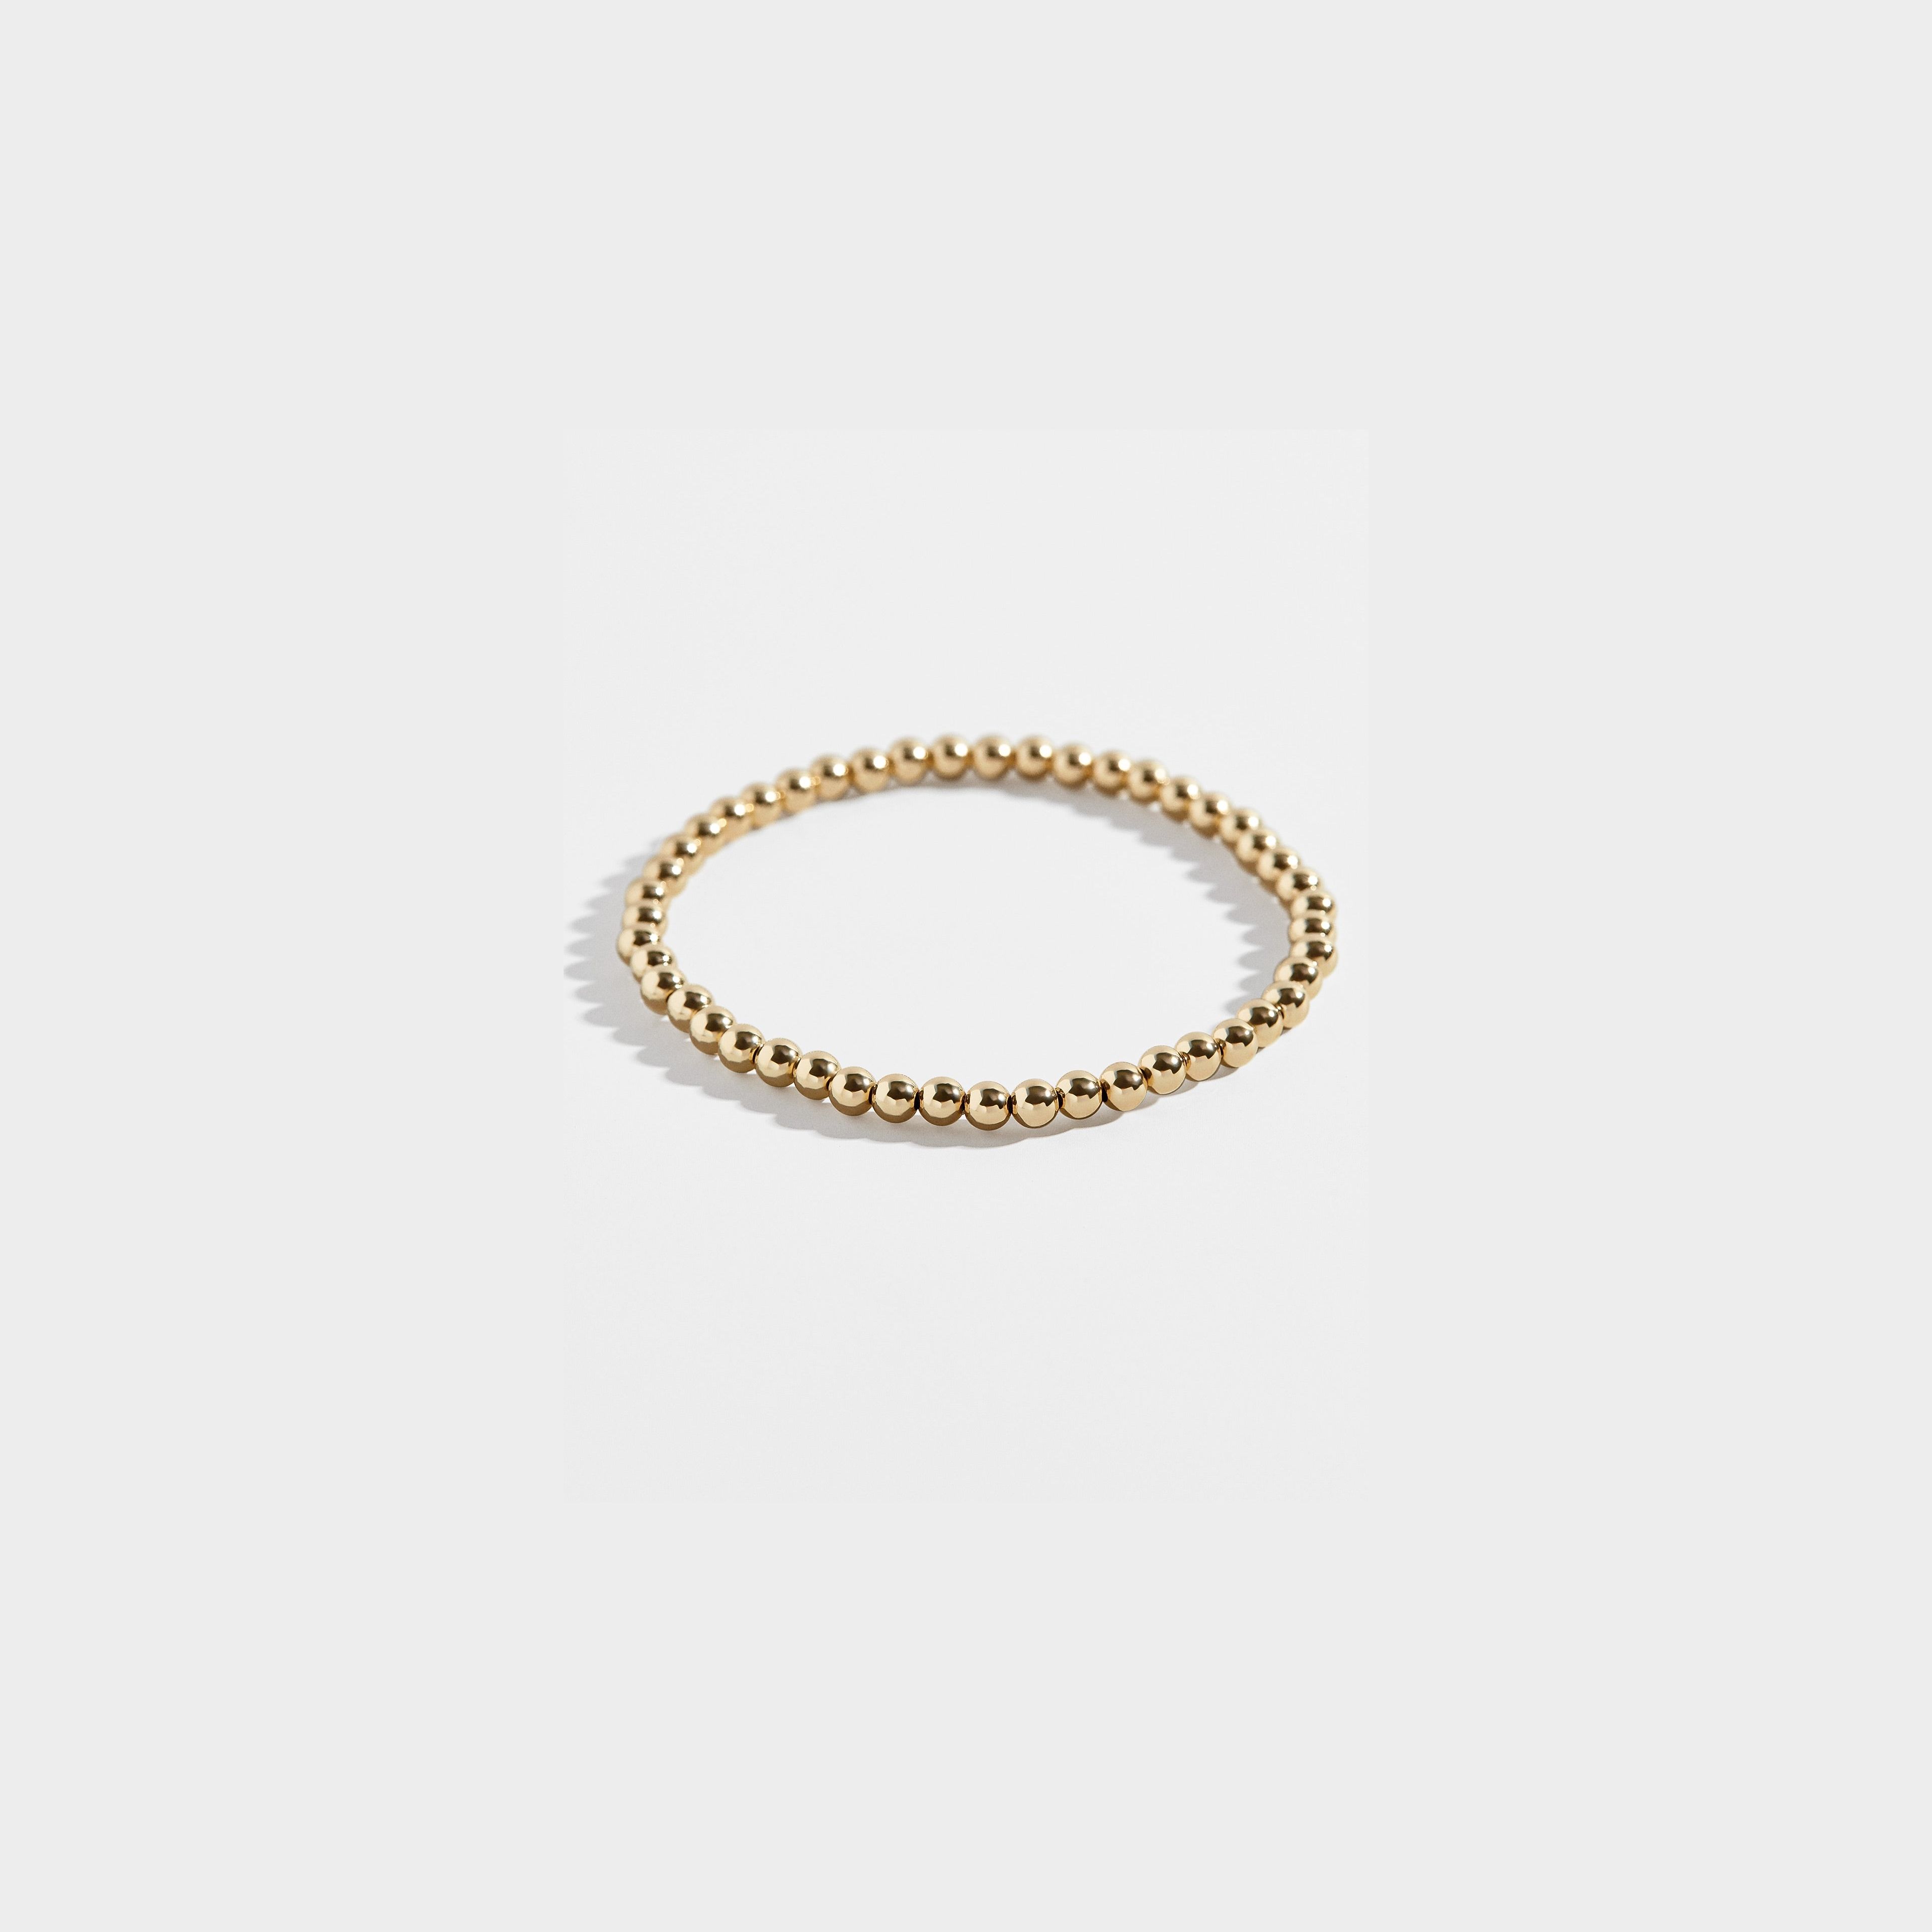 Pisa Bracelet - 14K Gold Filled